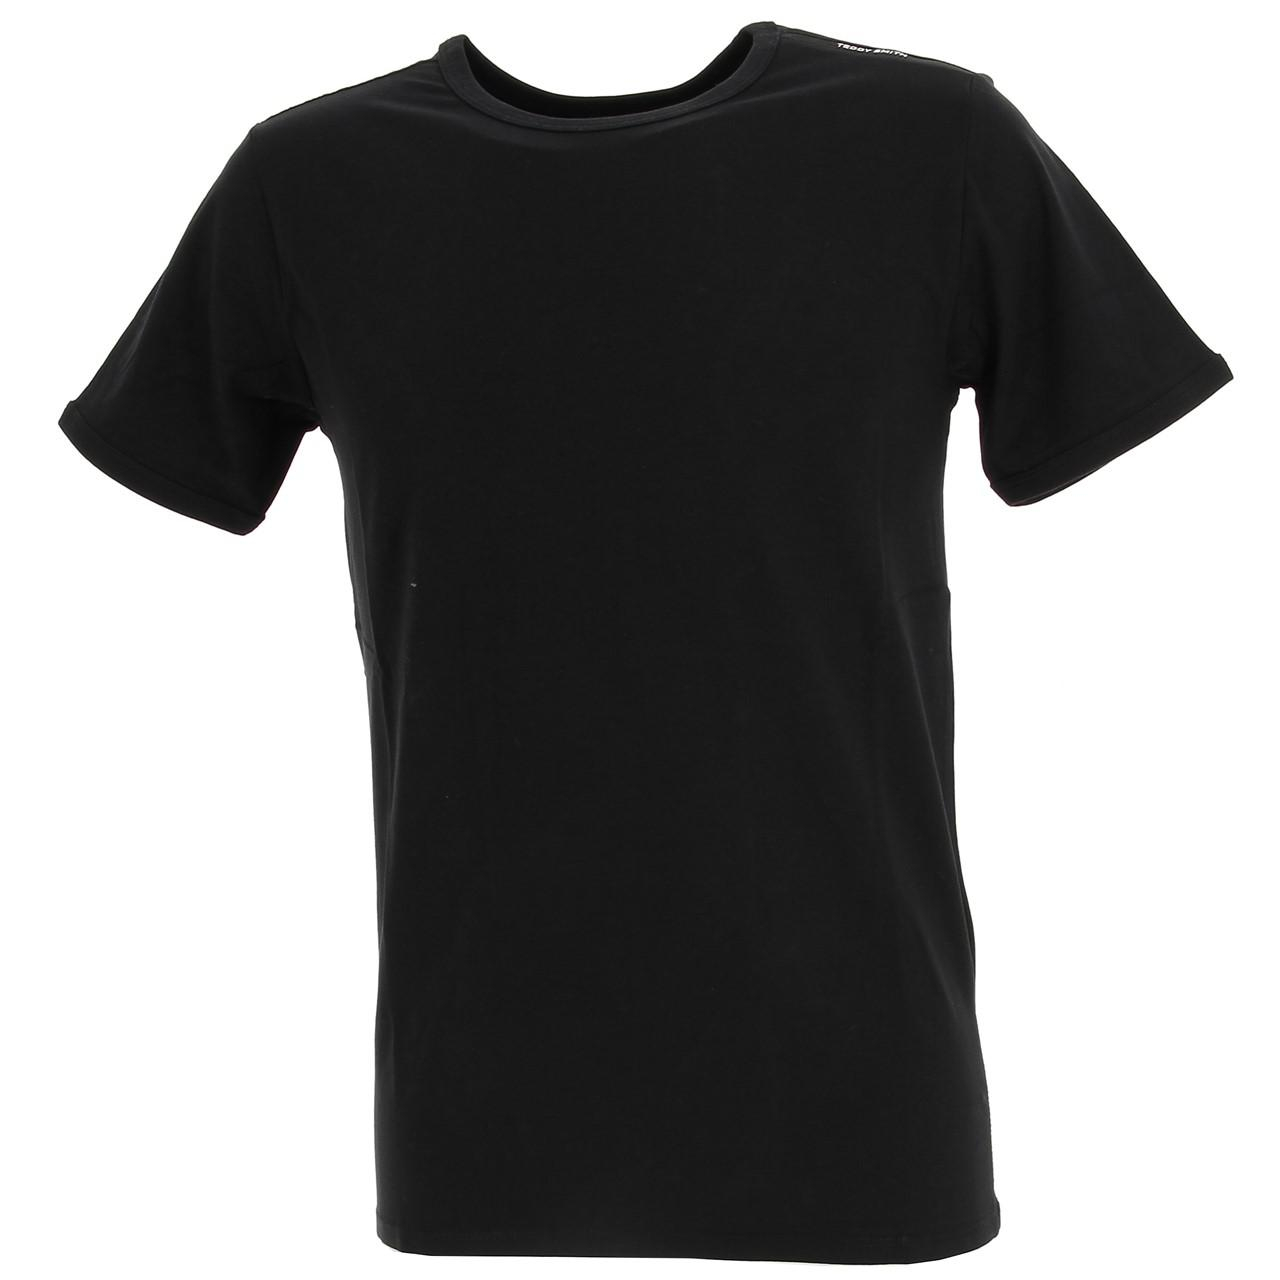 T-shirt tucker 2 noir homme - Teddy Smith